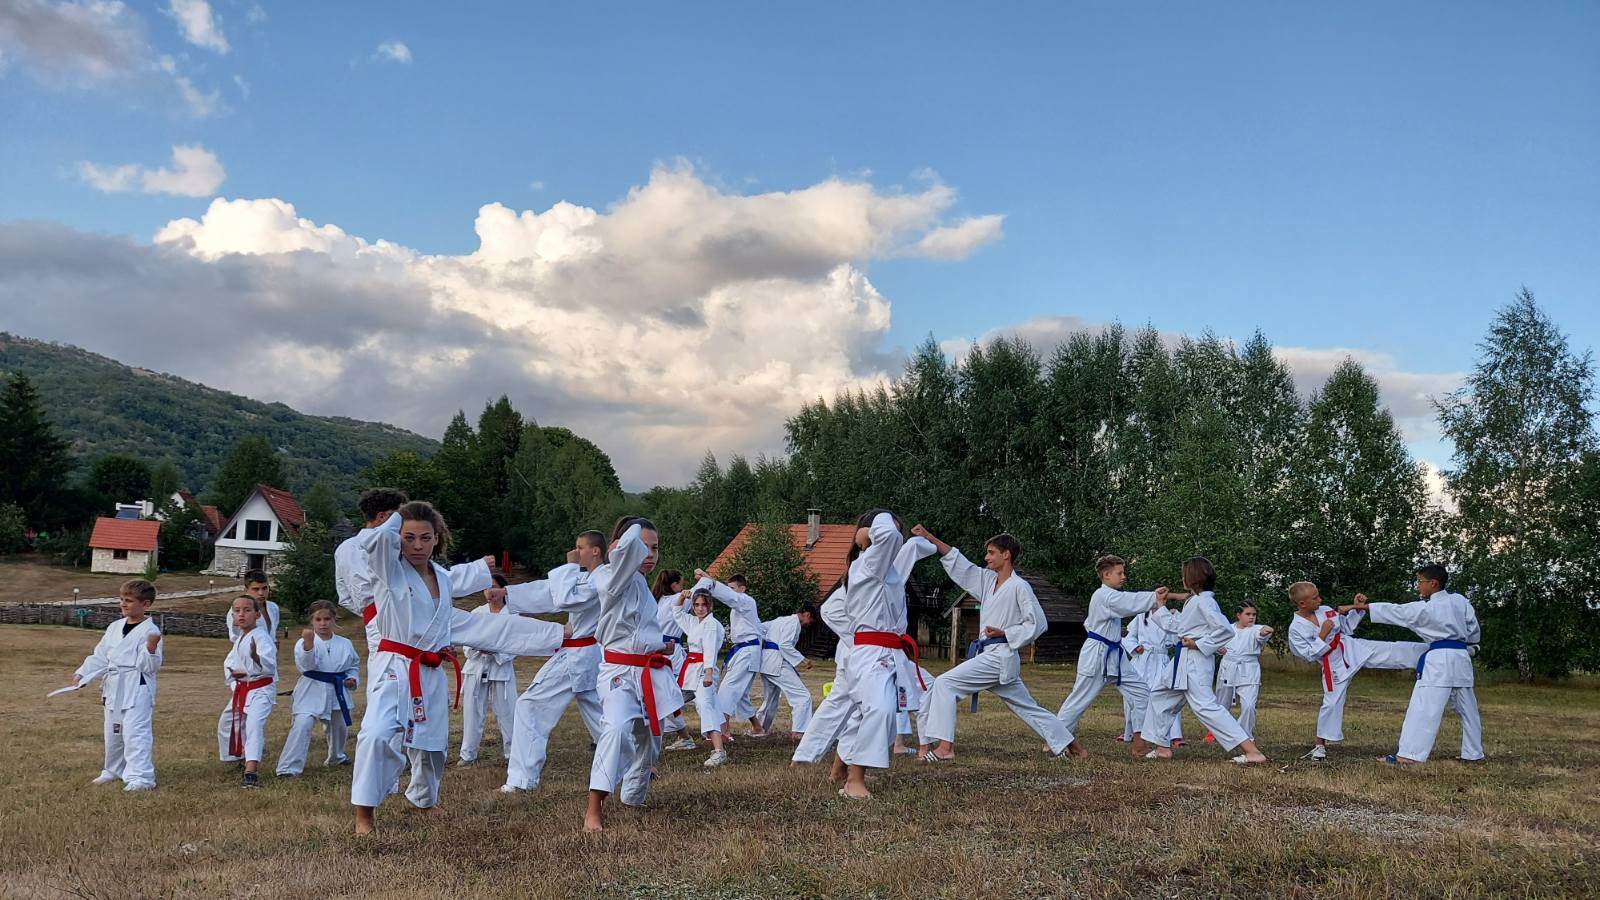  karate klub iskra kamp etno selo montenegro 